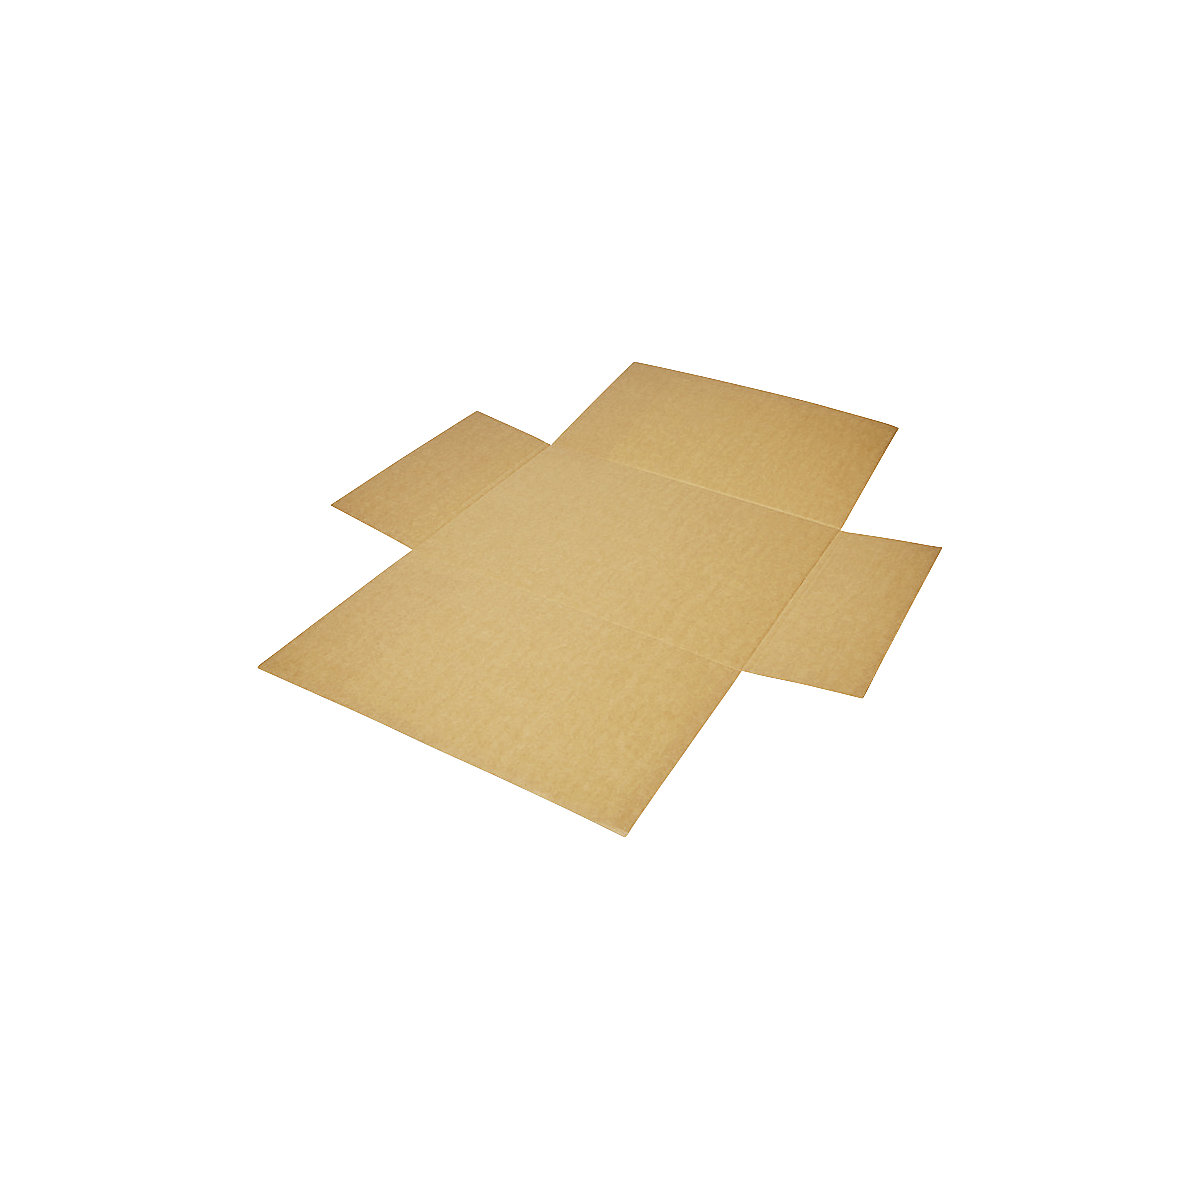 Imballaggio incrociato, in pezzo unico, a 1 parete, marrone, lungh. x largh. 600 x 425 mm, altezza di riempimento 120 mm, a partire da 100 pz.-1